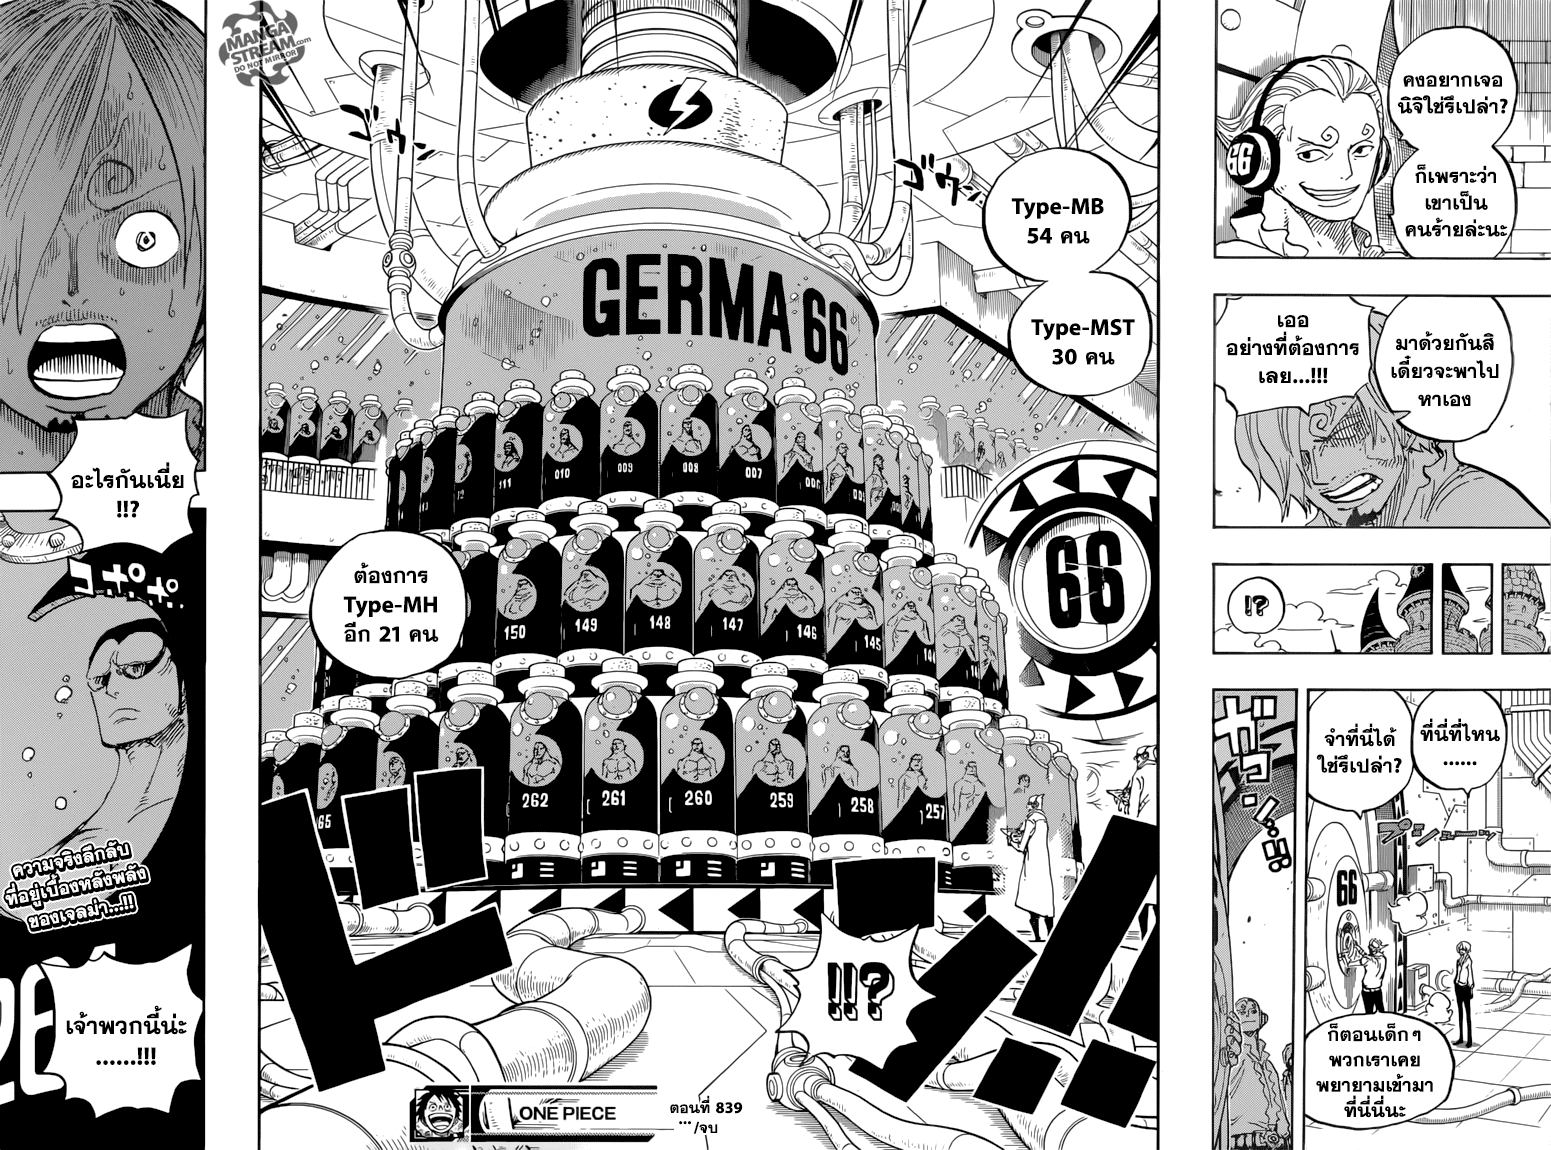 One Piece วันพีซ ตอนที่ 839 : บุญคุณนี้จะไม่มีวันลืมไปตลอดชีวิต